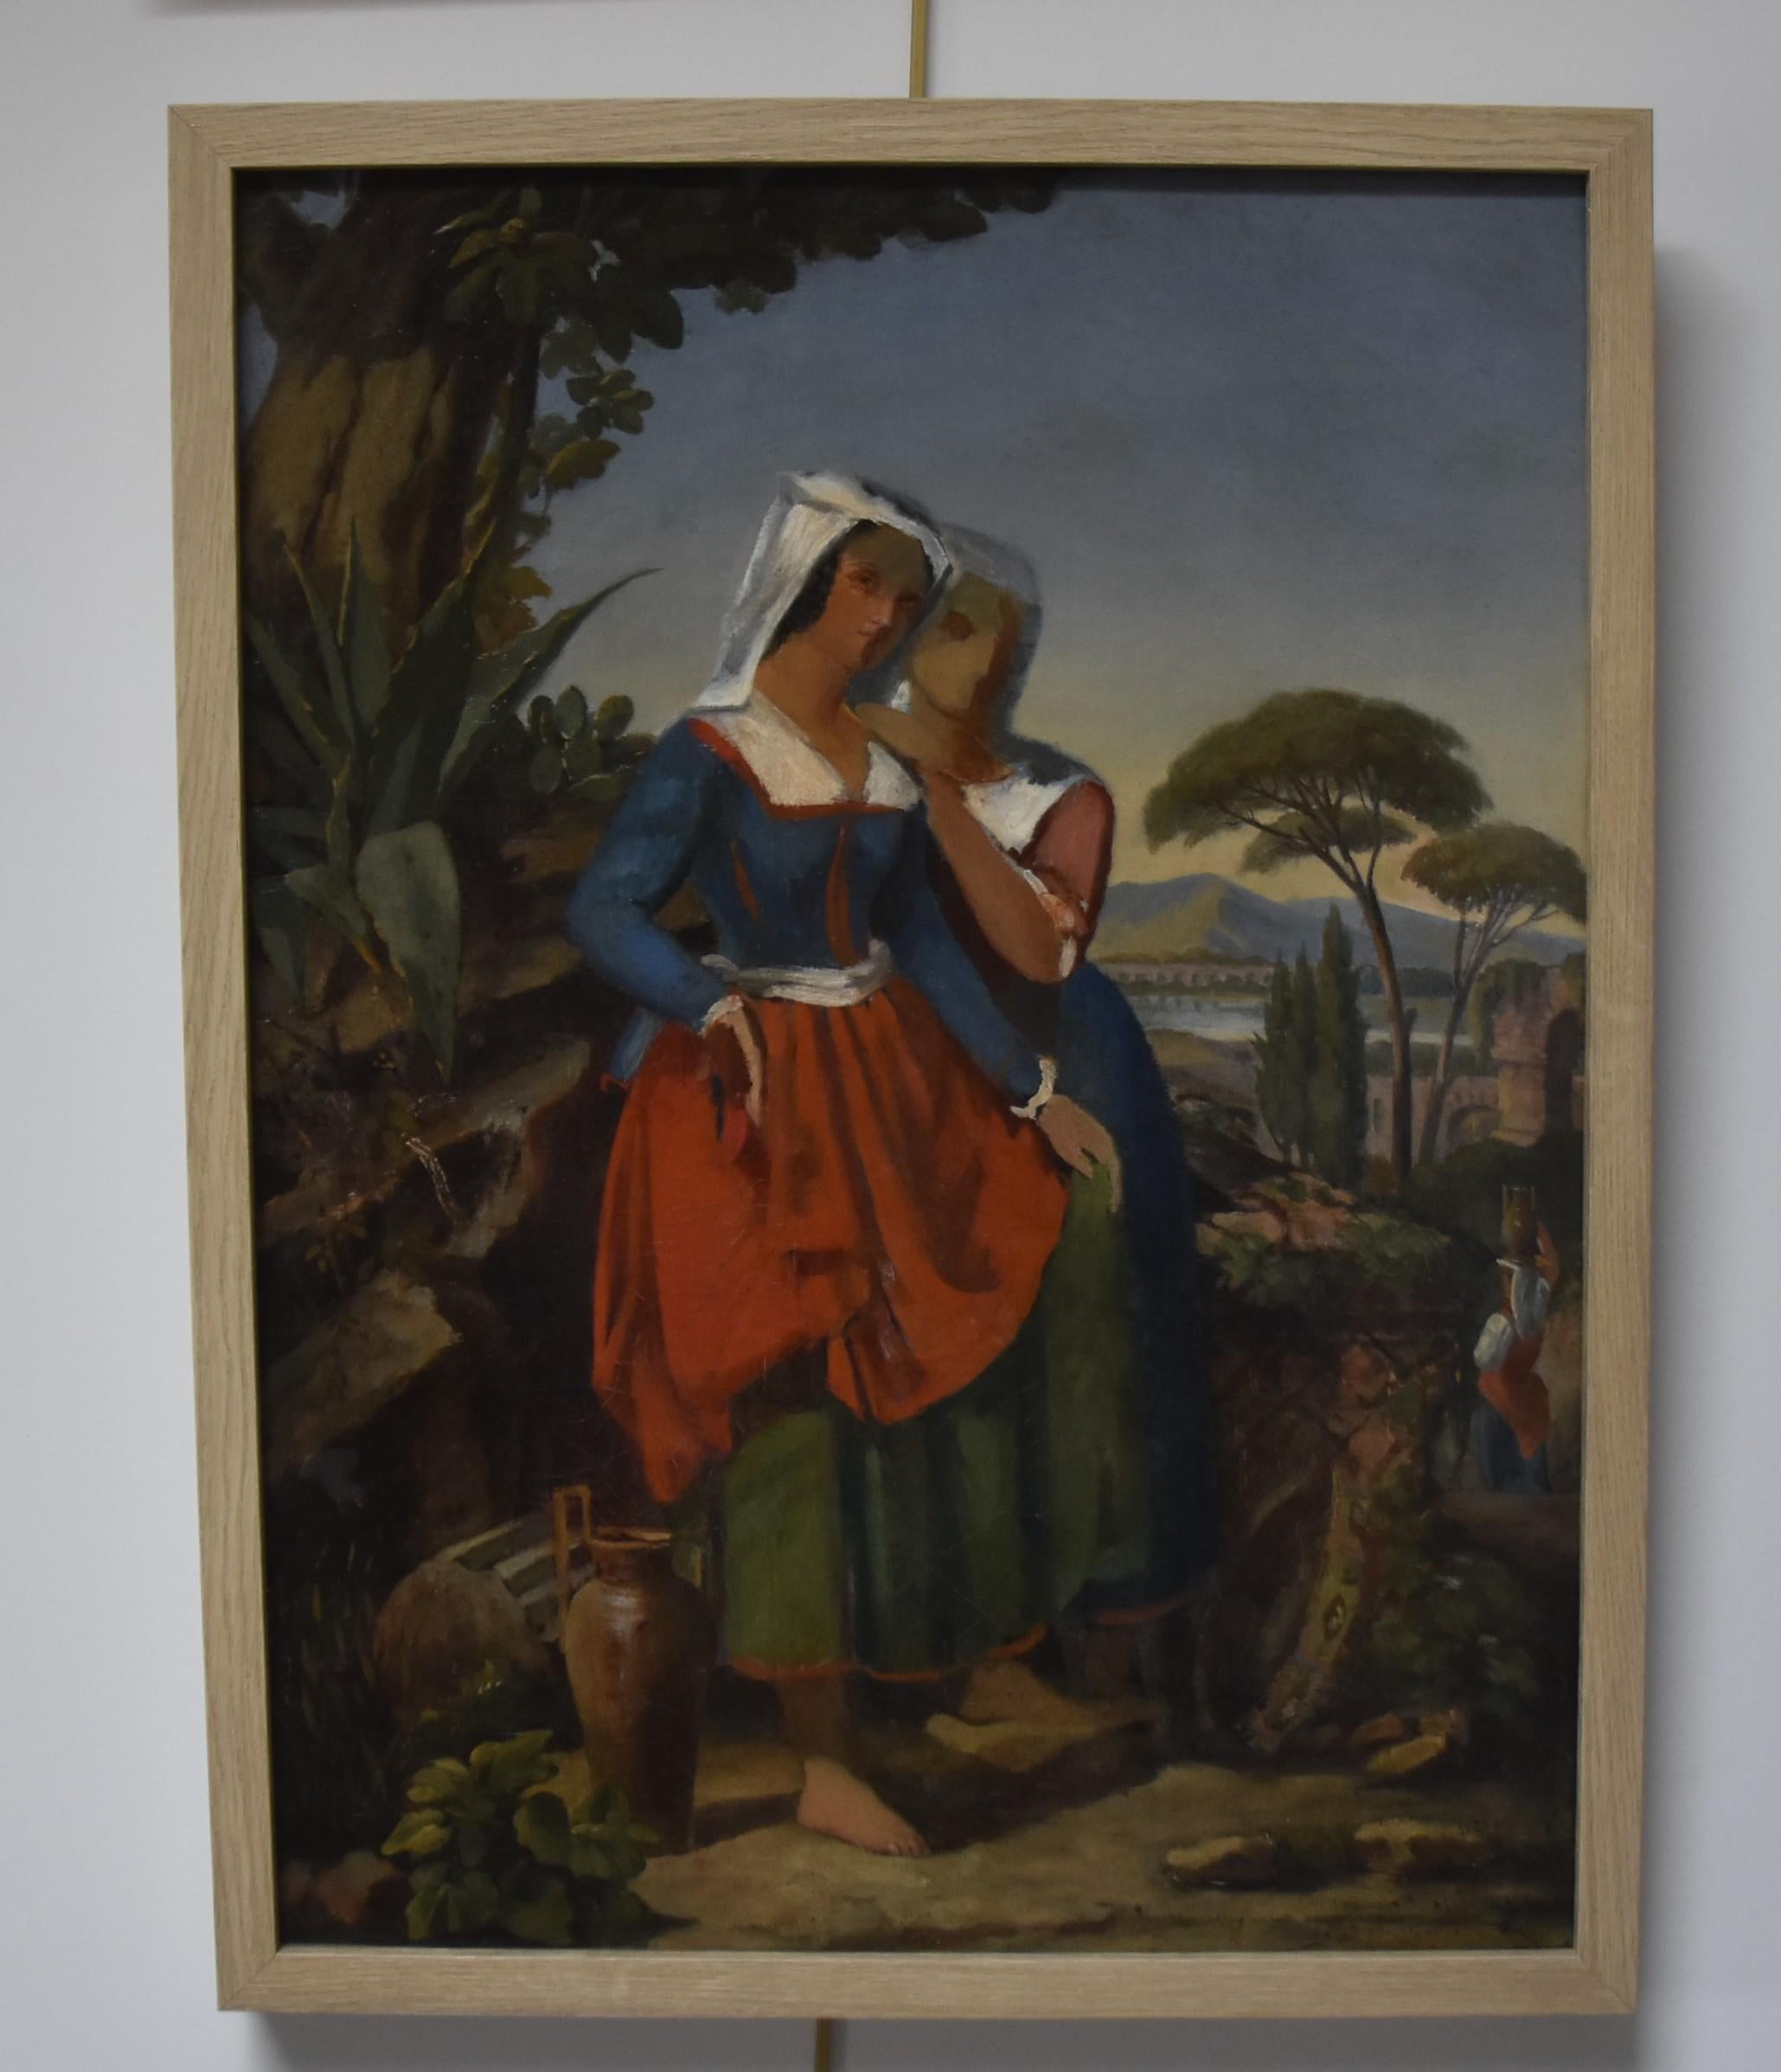 Französische Schule des 19. Jahrhunderts, zwei italienische Frauen in einer Landschaft, eine Ölskizze – Painting von Unknown